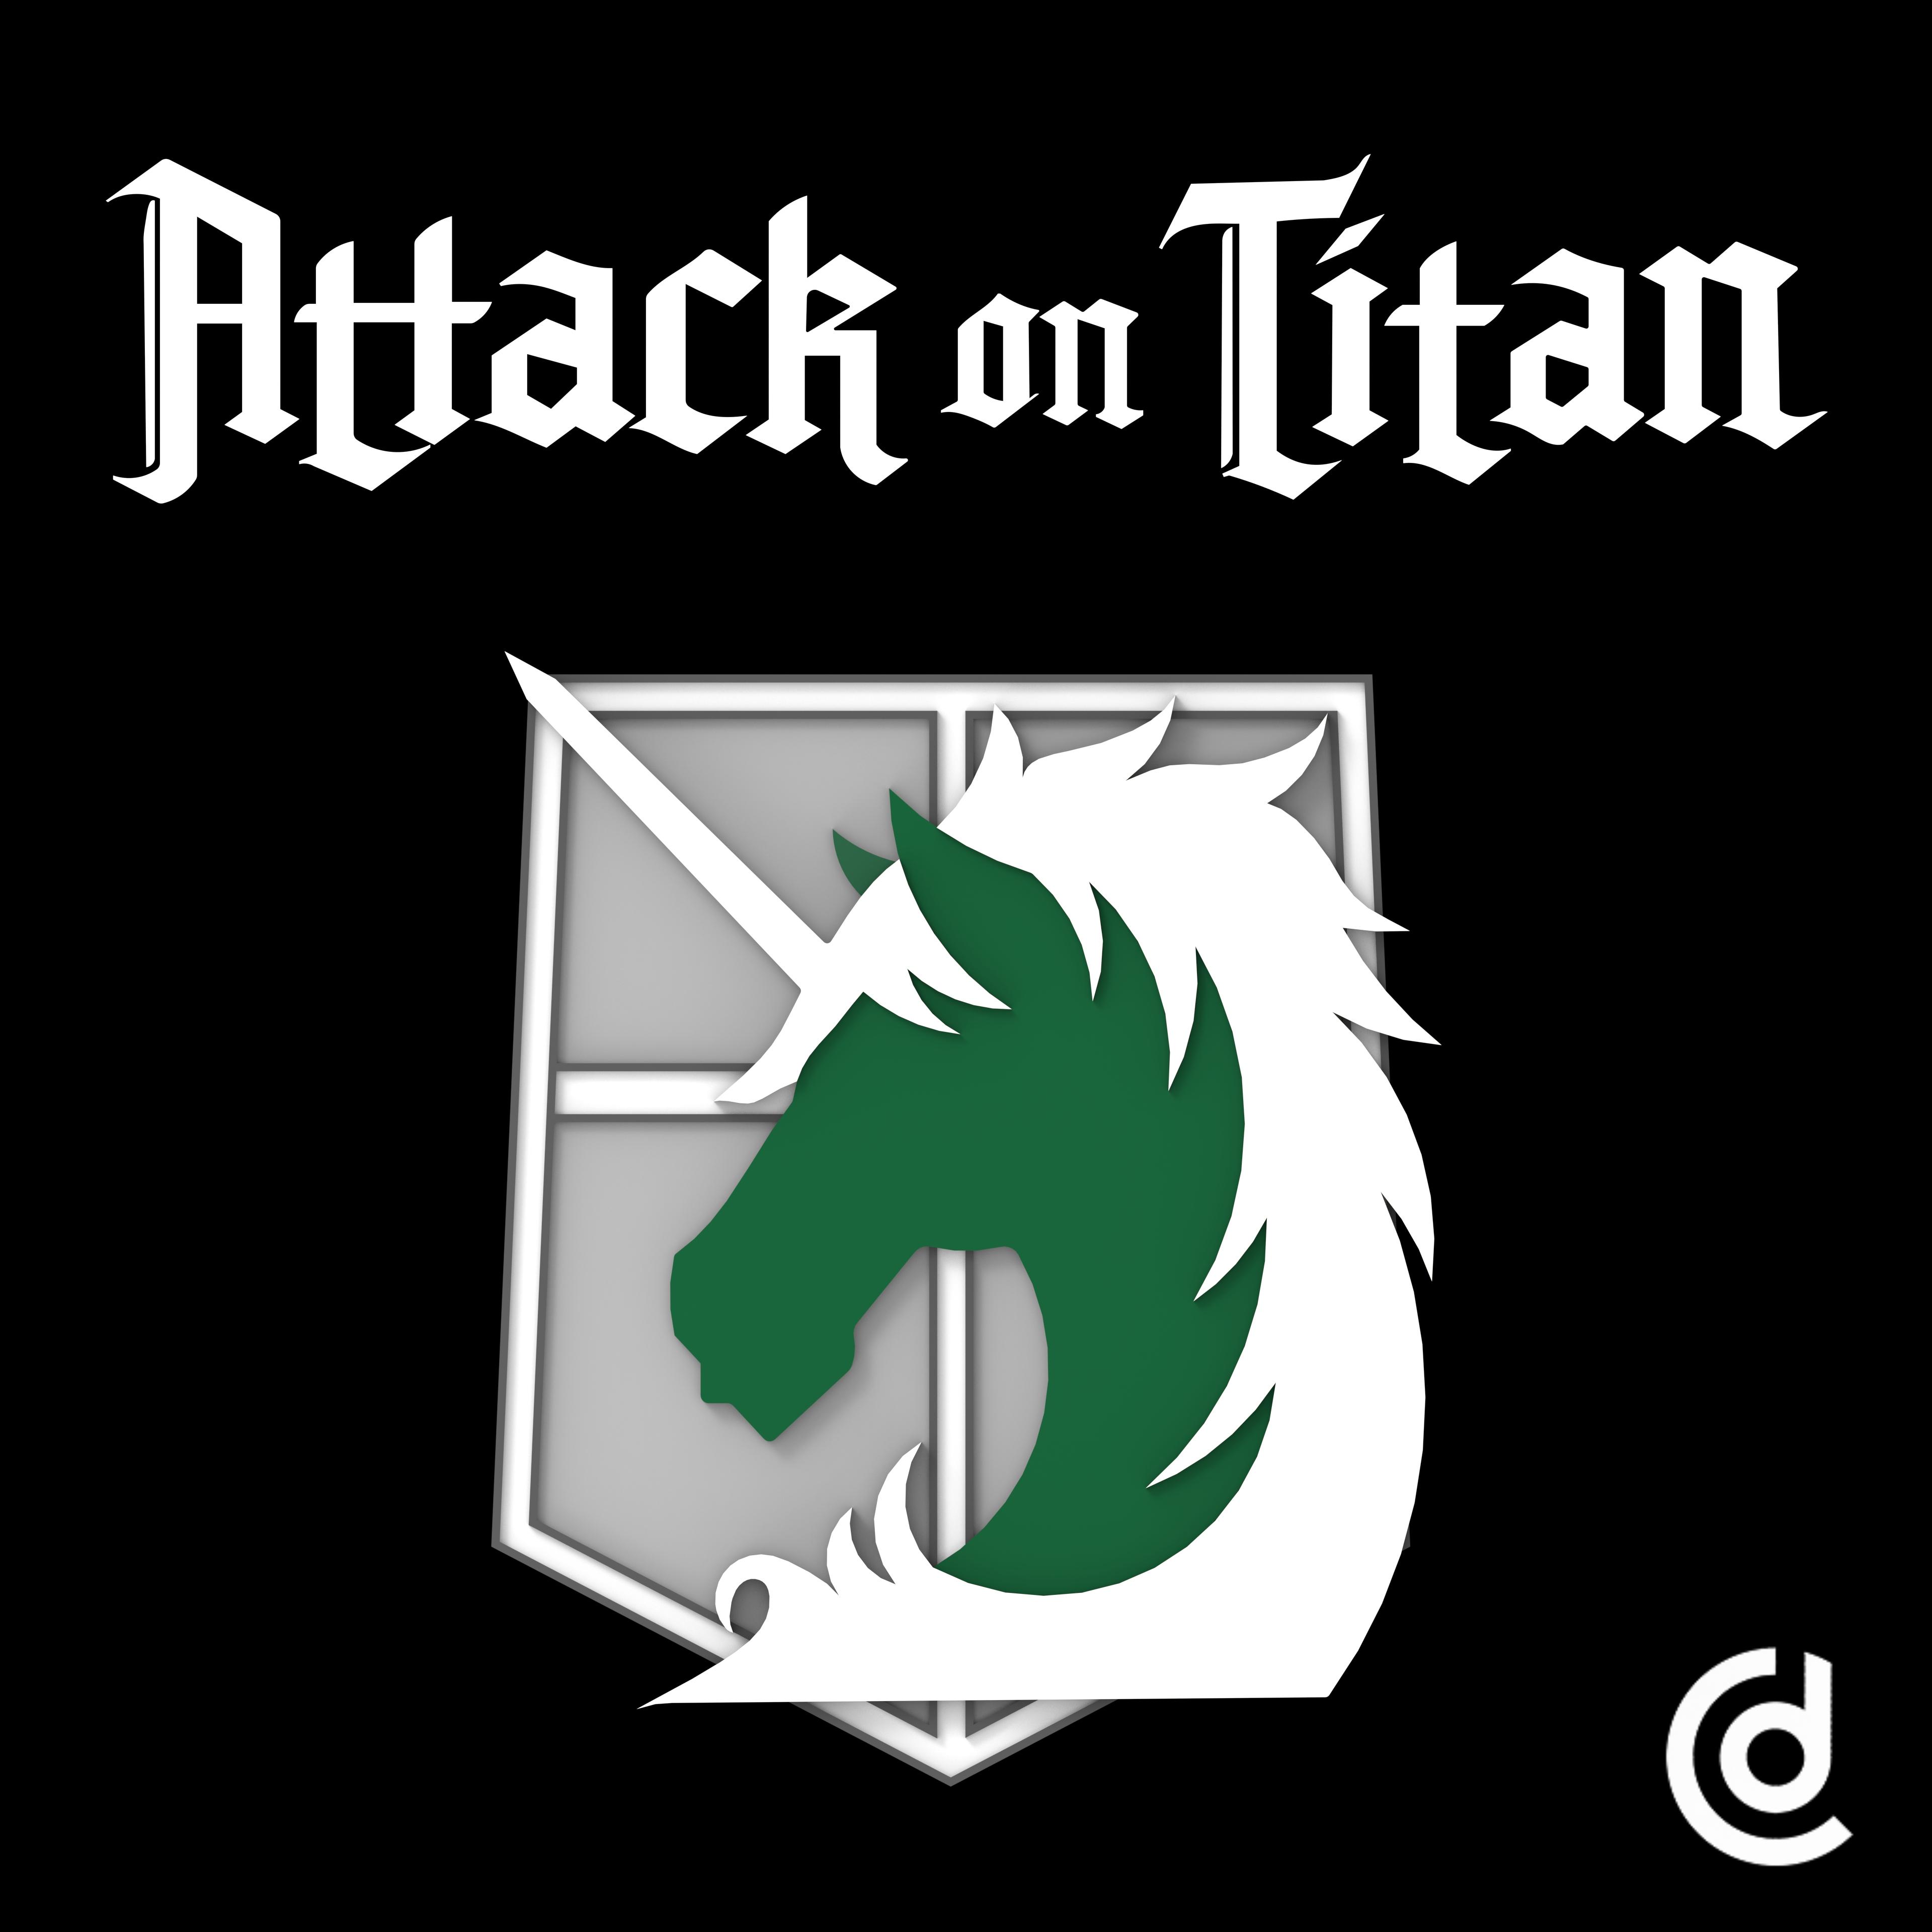 attack on titan military logos